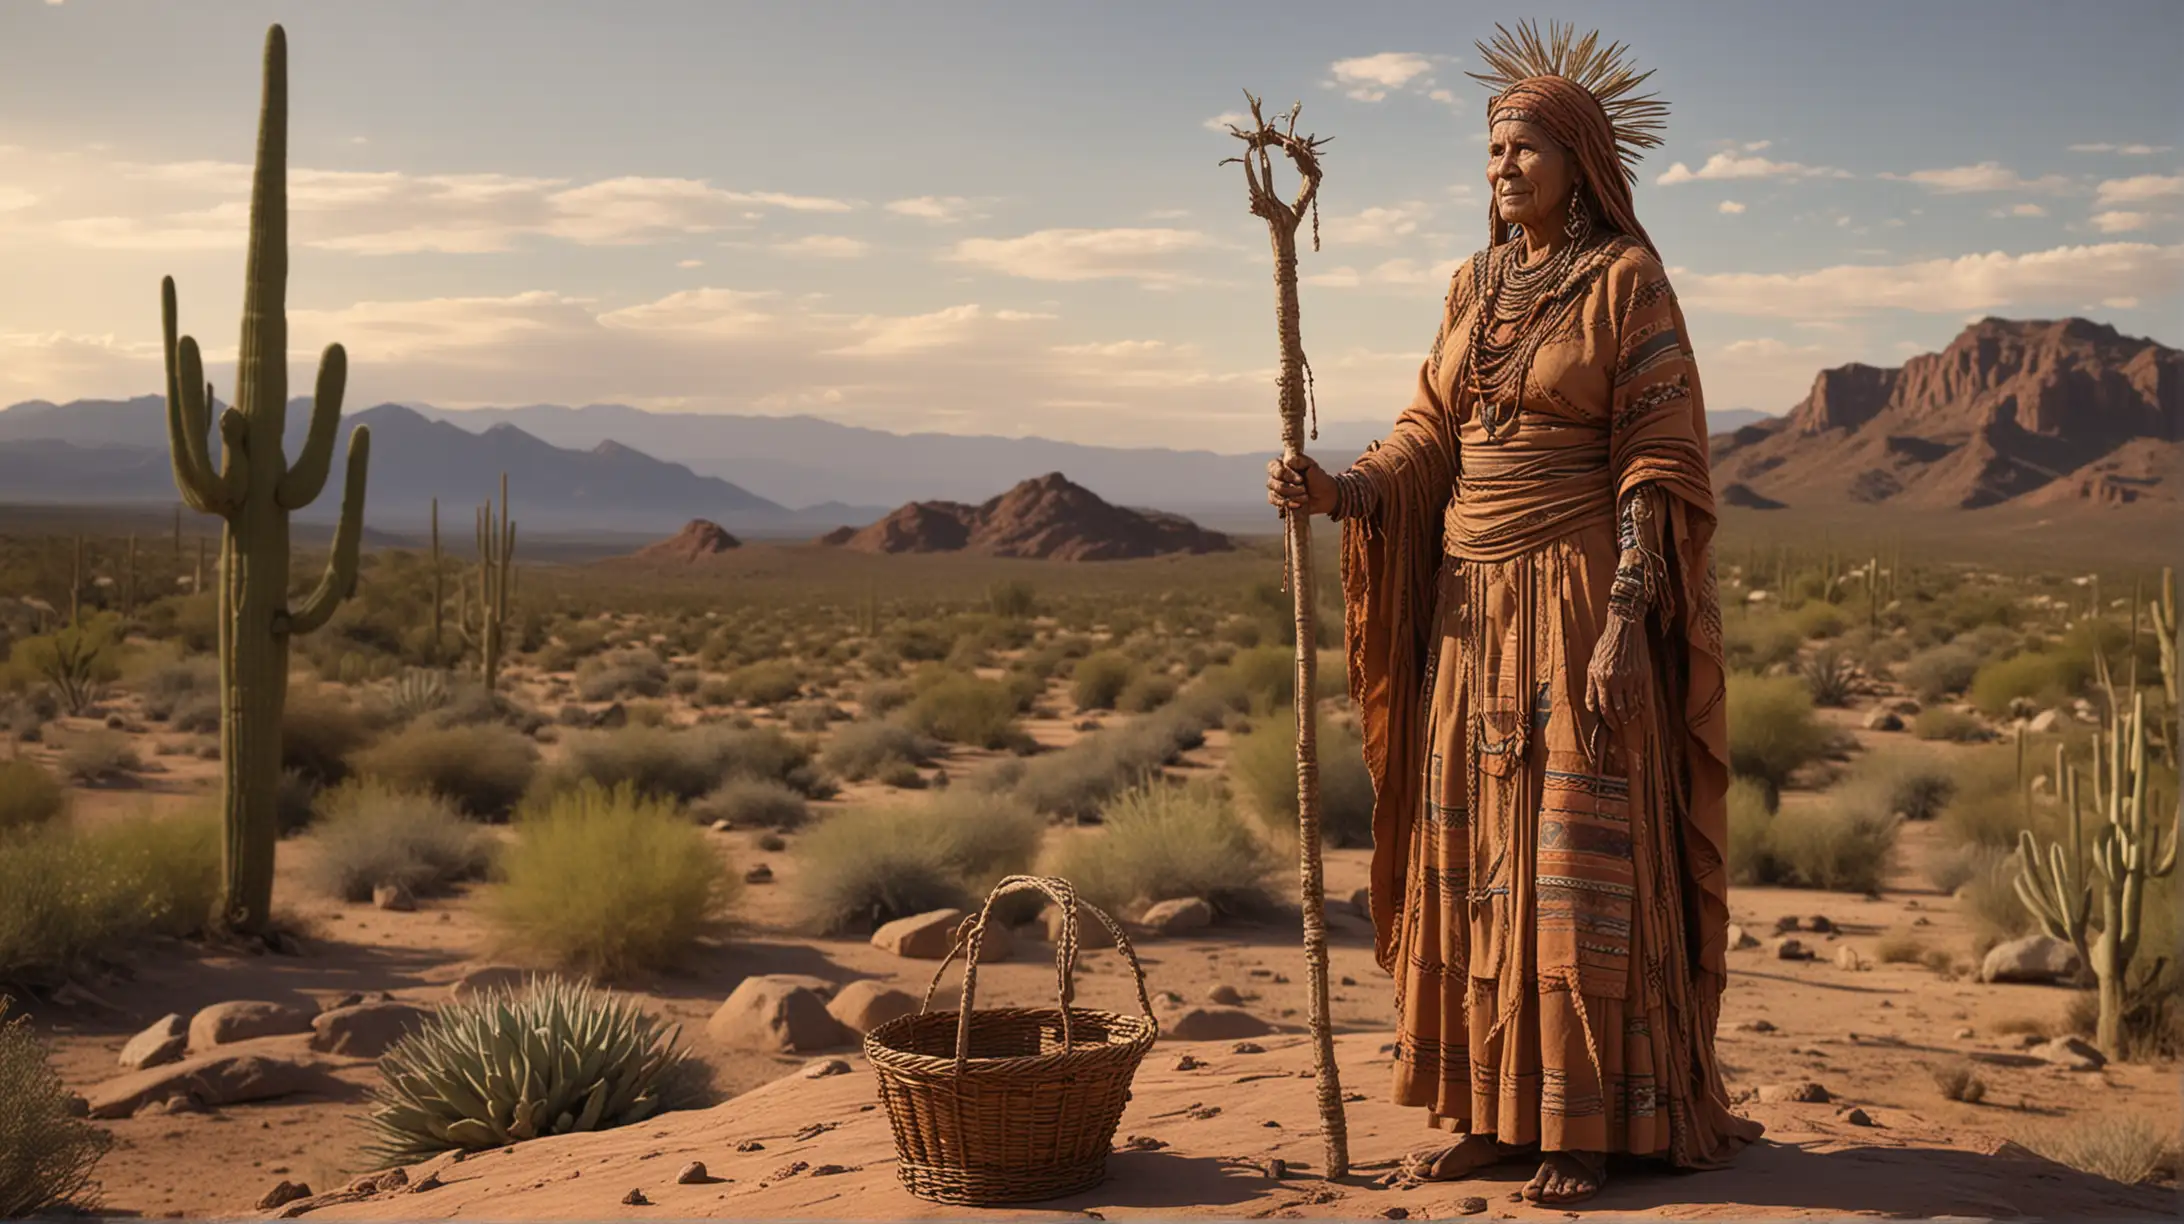 Desert Guardian Elder Woman Sculpture in Copper at Sunset